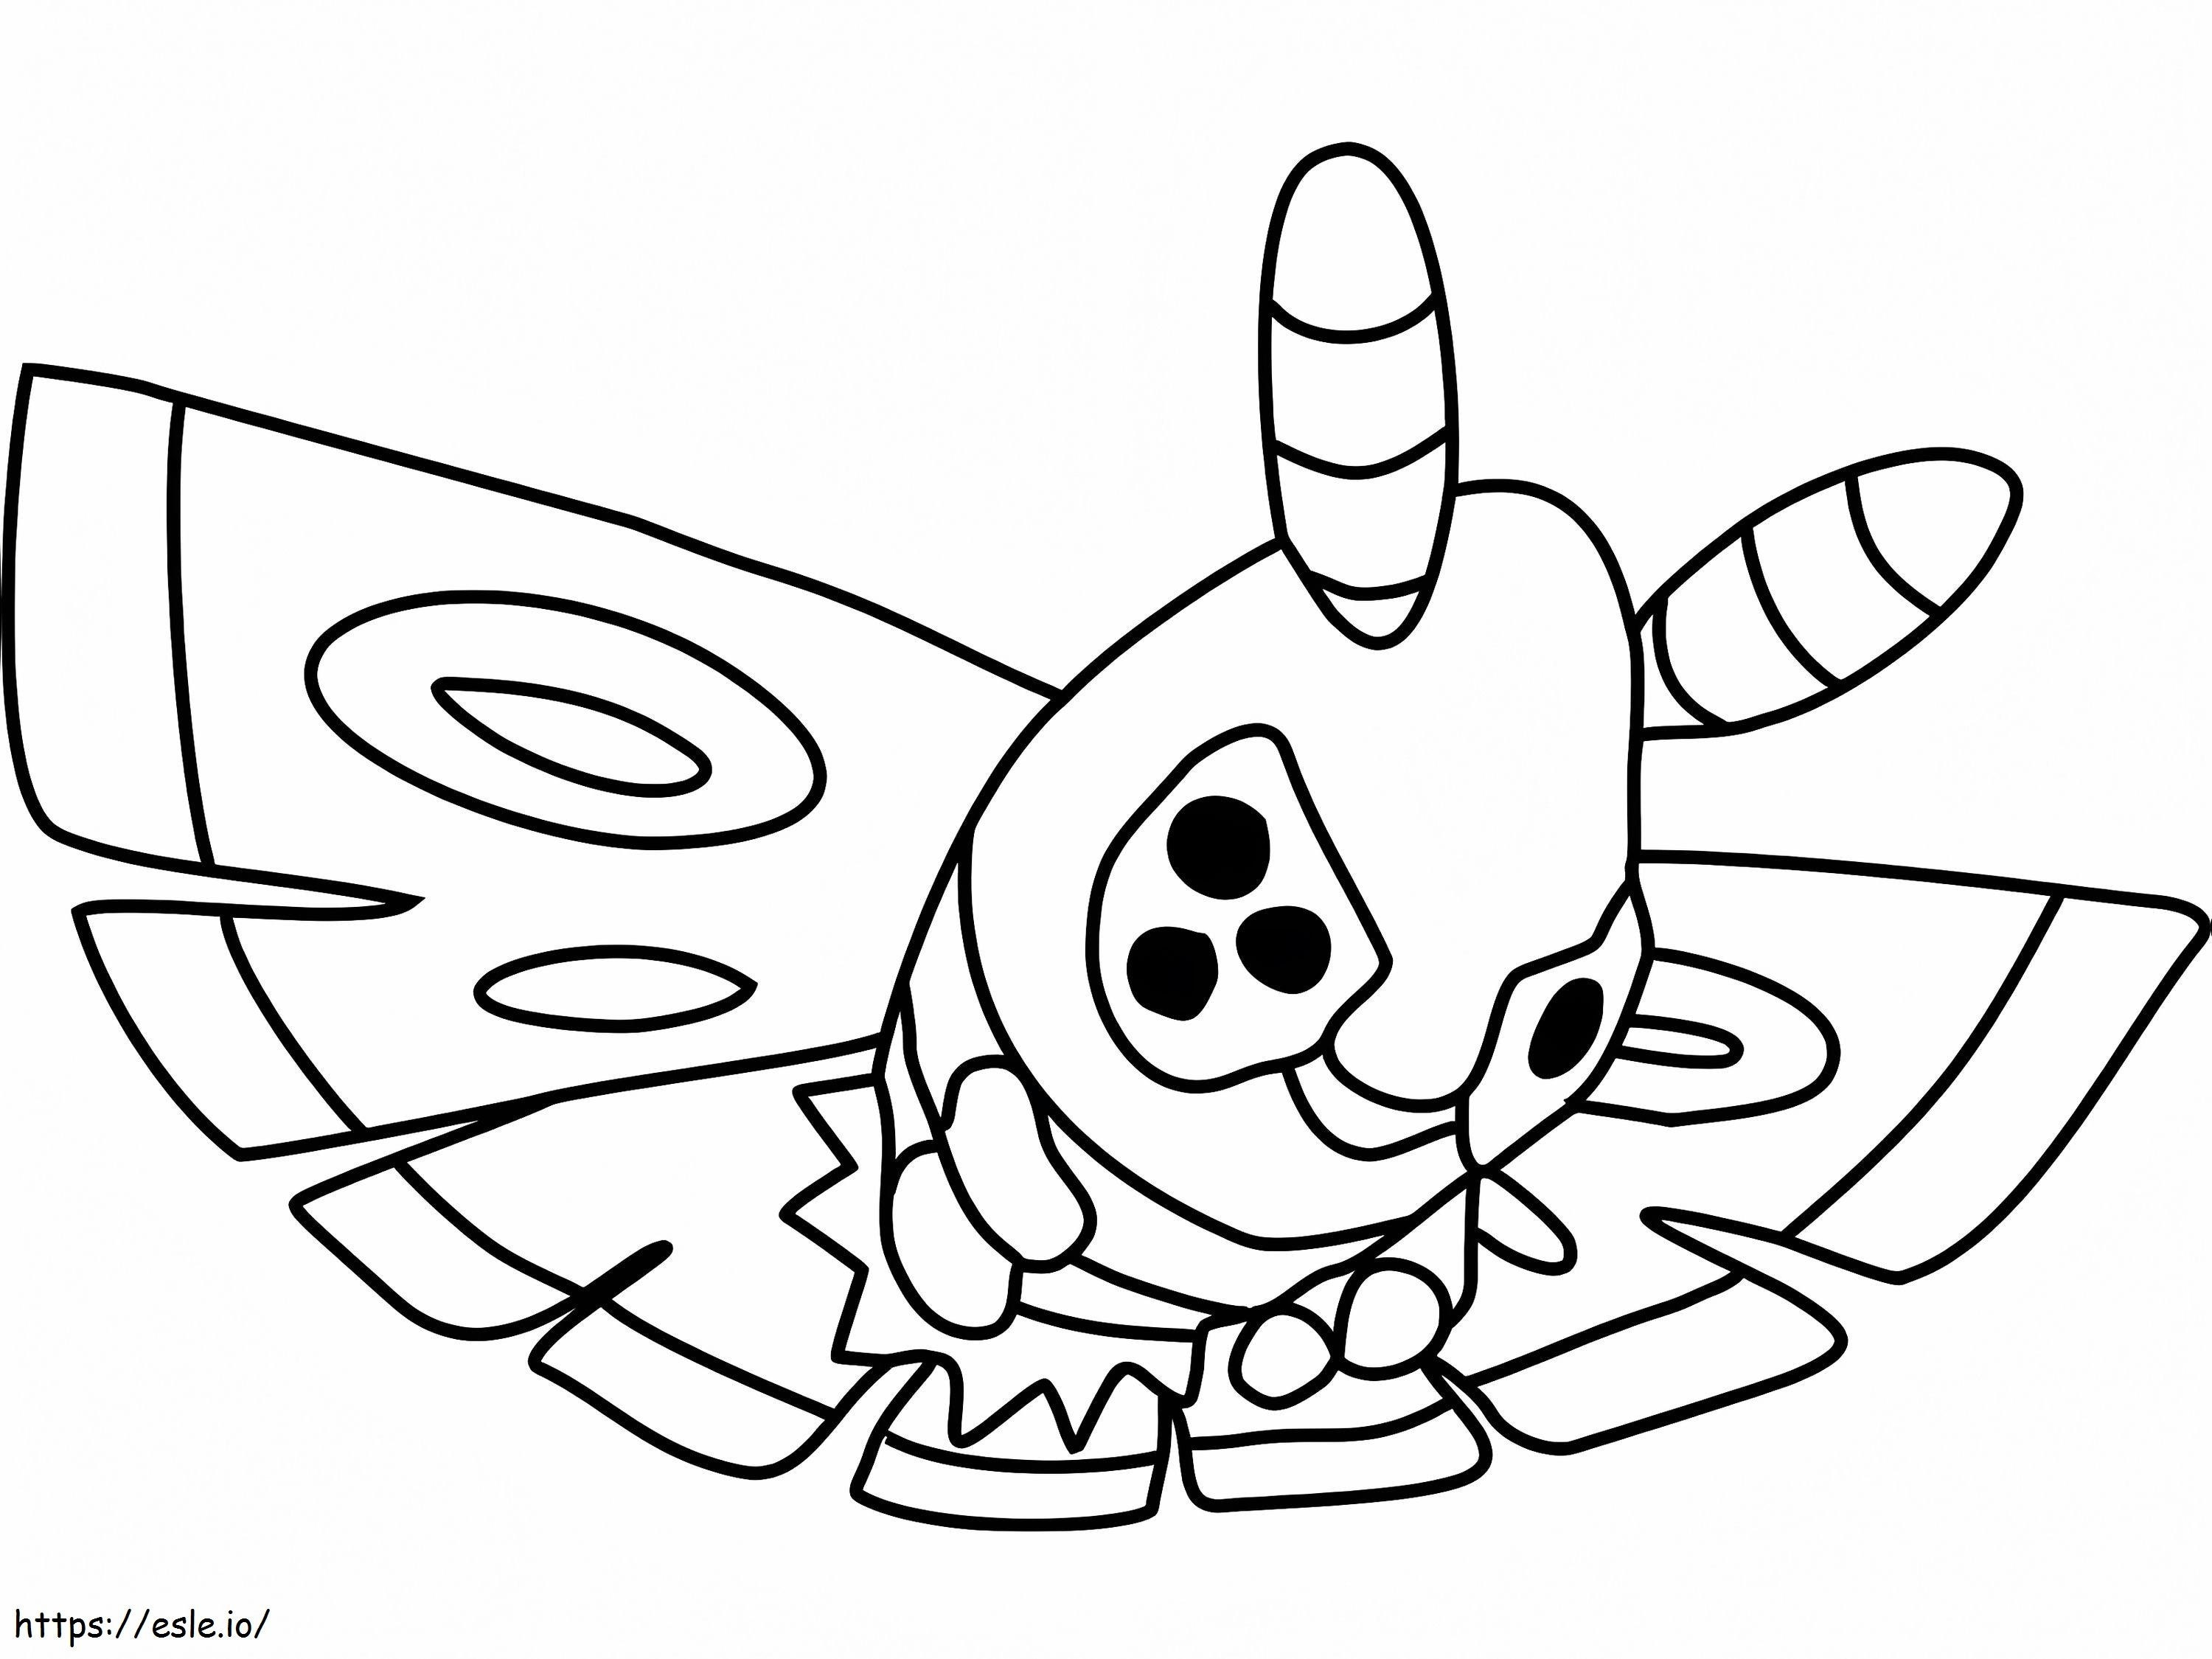 Coloriage Pokémon Dustox imprimable à imprimer dessin